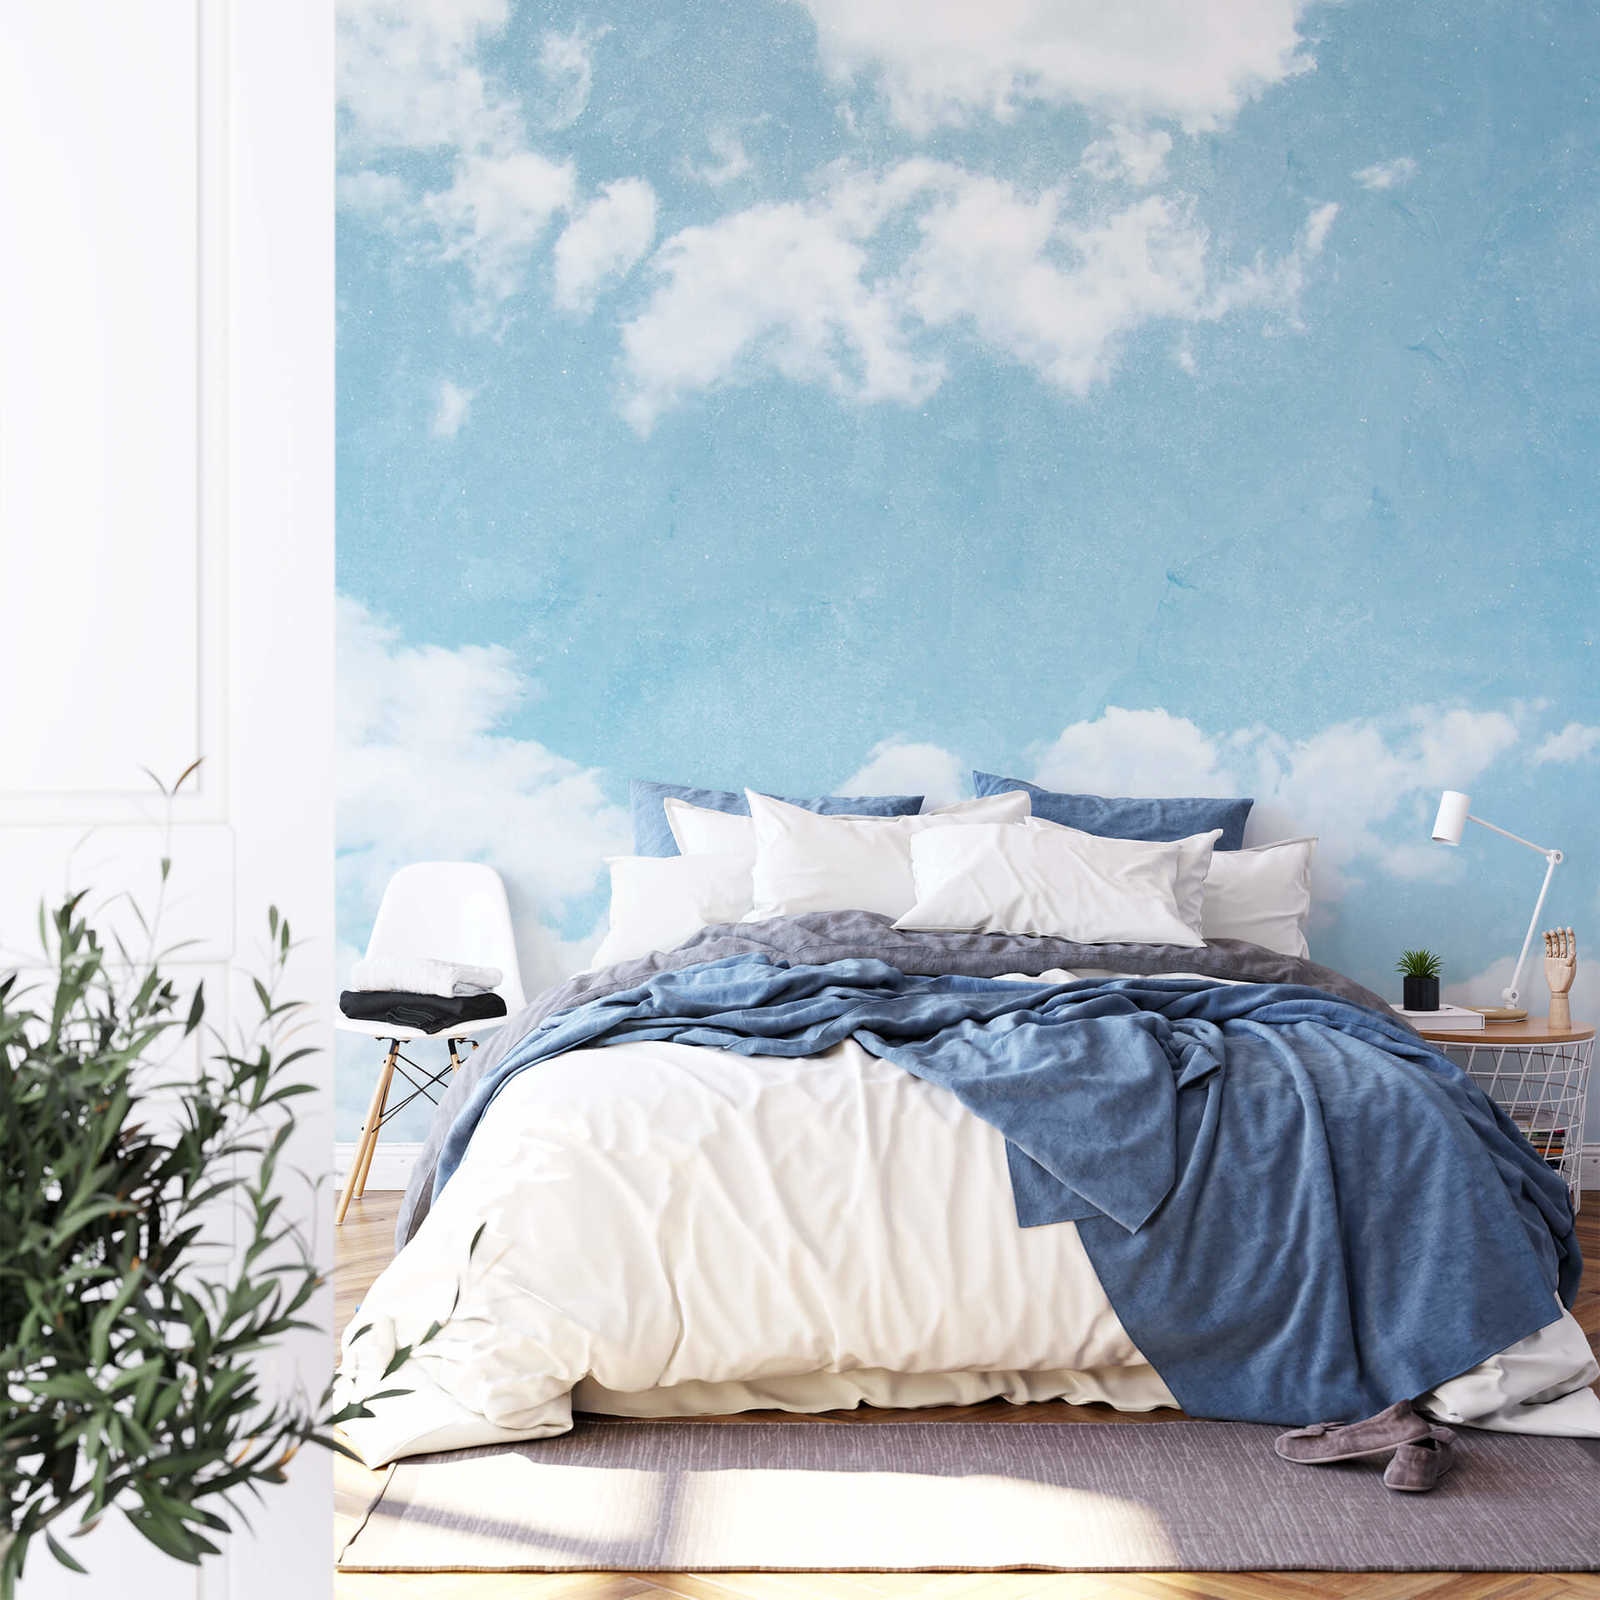             Papier peint panoramique ciel nuageux - bleu, blanc
        